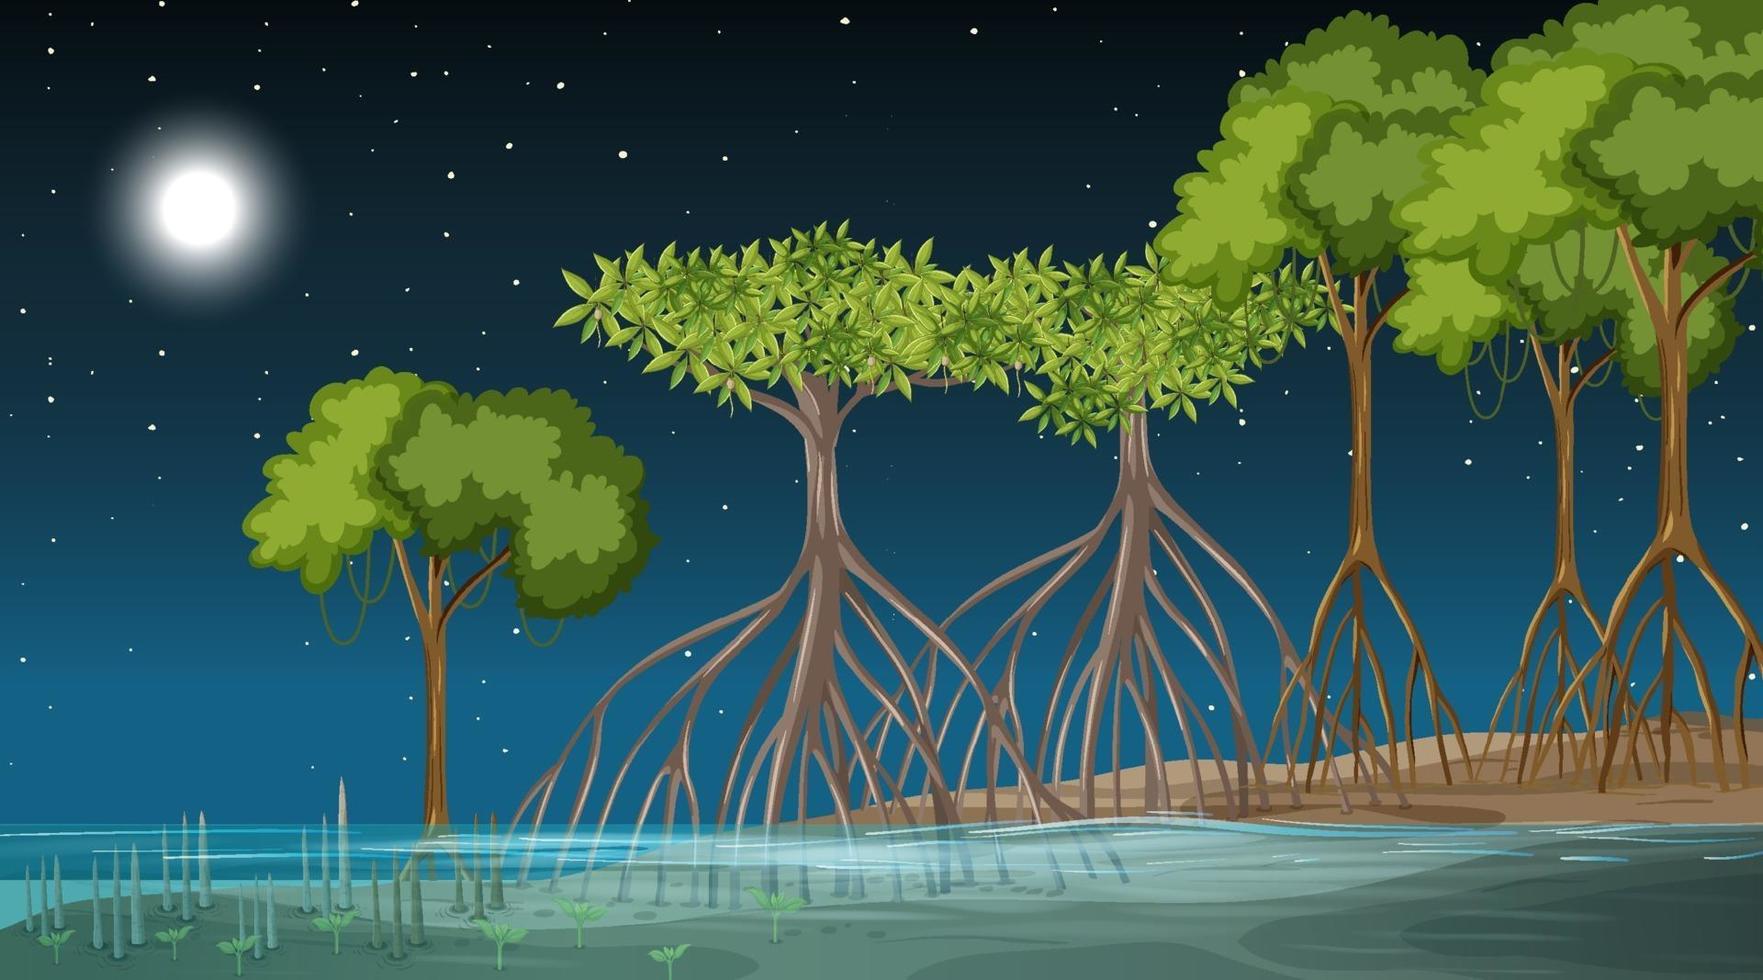 mangrovebos landschap scène 's nachts vector